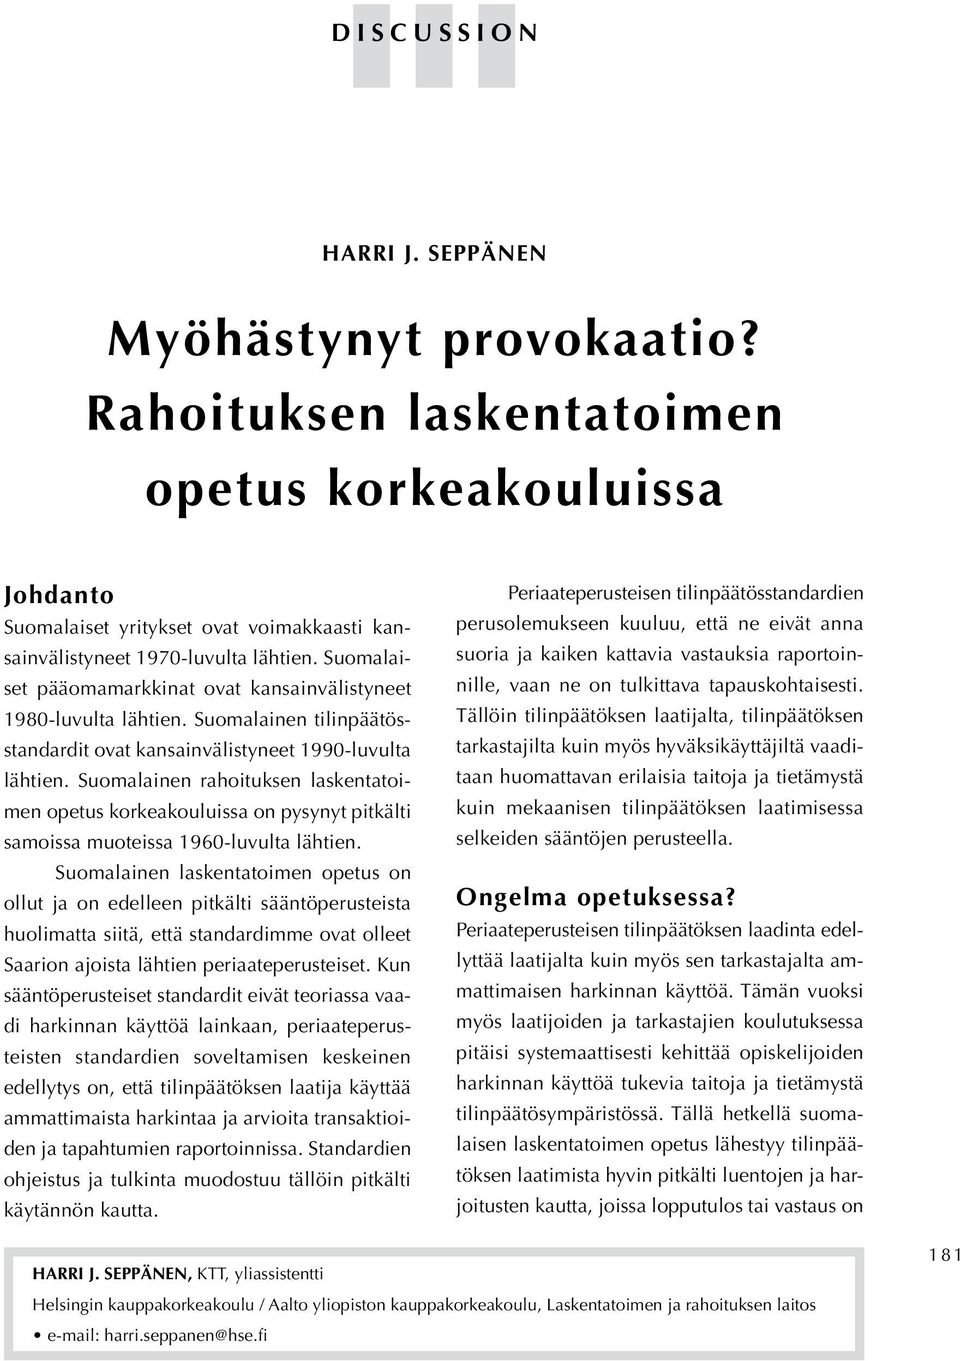 Suomalainen rahoituksen laskentatoimen opetus korkeakouluissa on pysynyt pitkälti samoissa muoteissa 1960-luvulta lähtien.